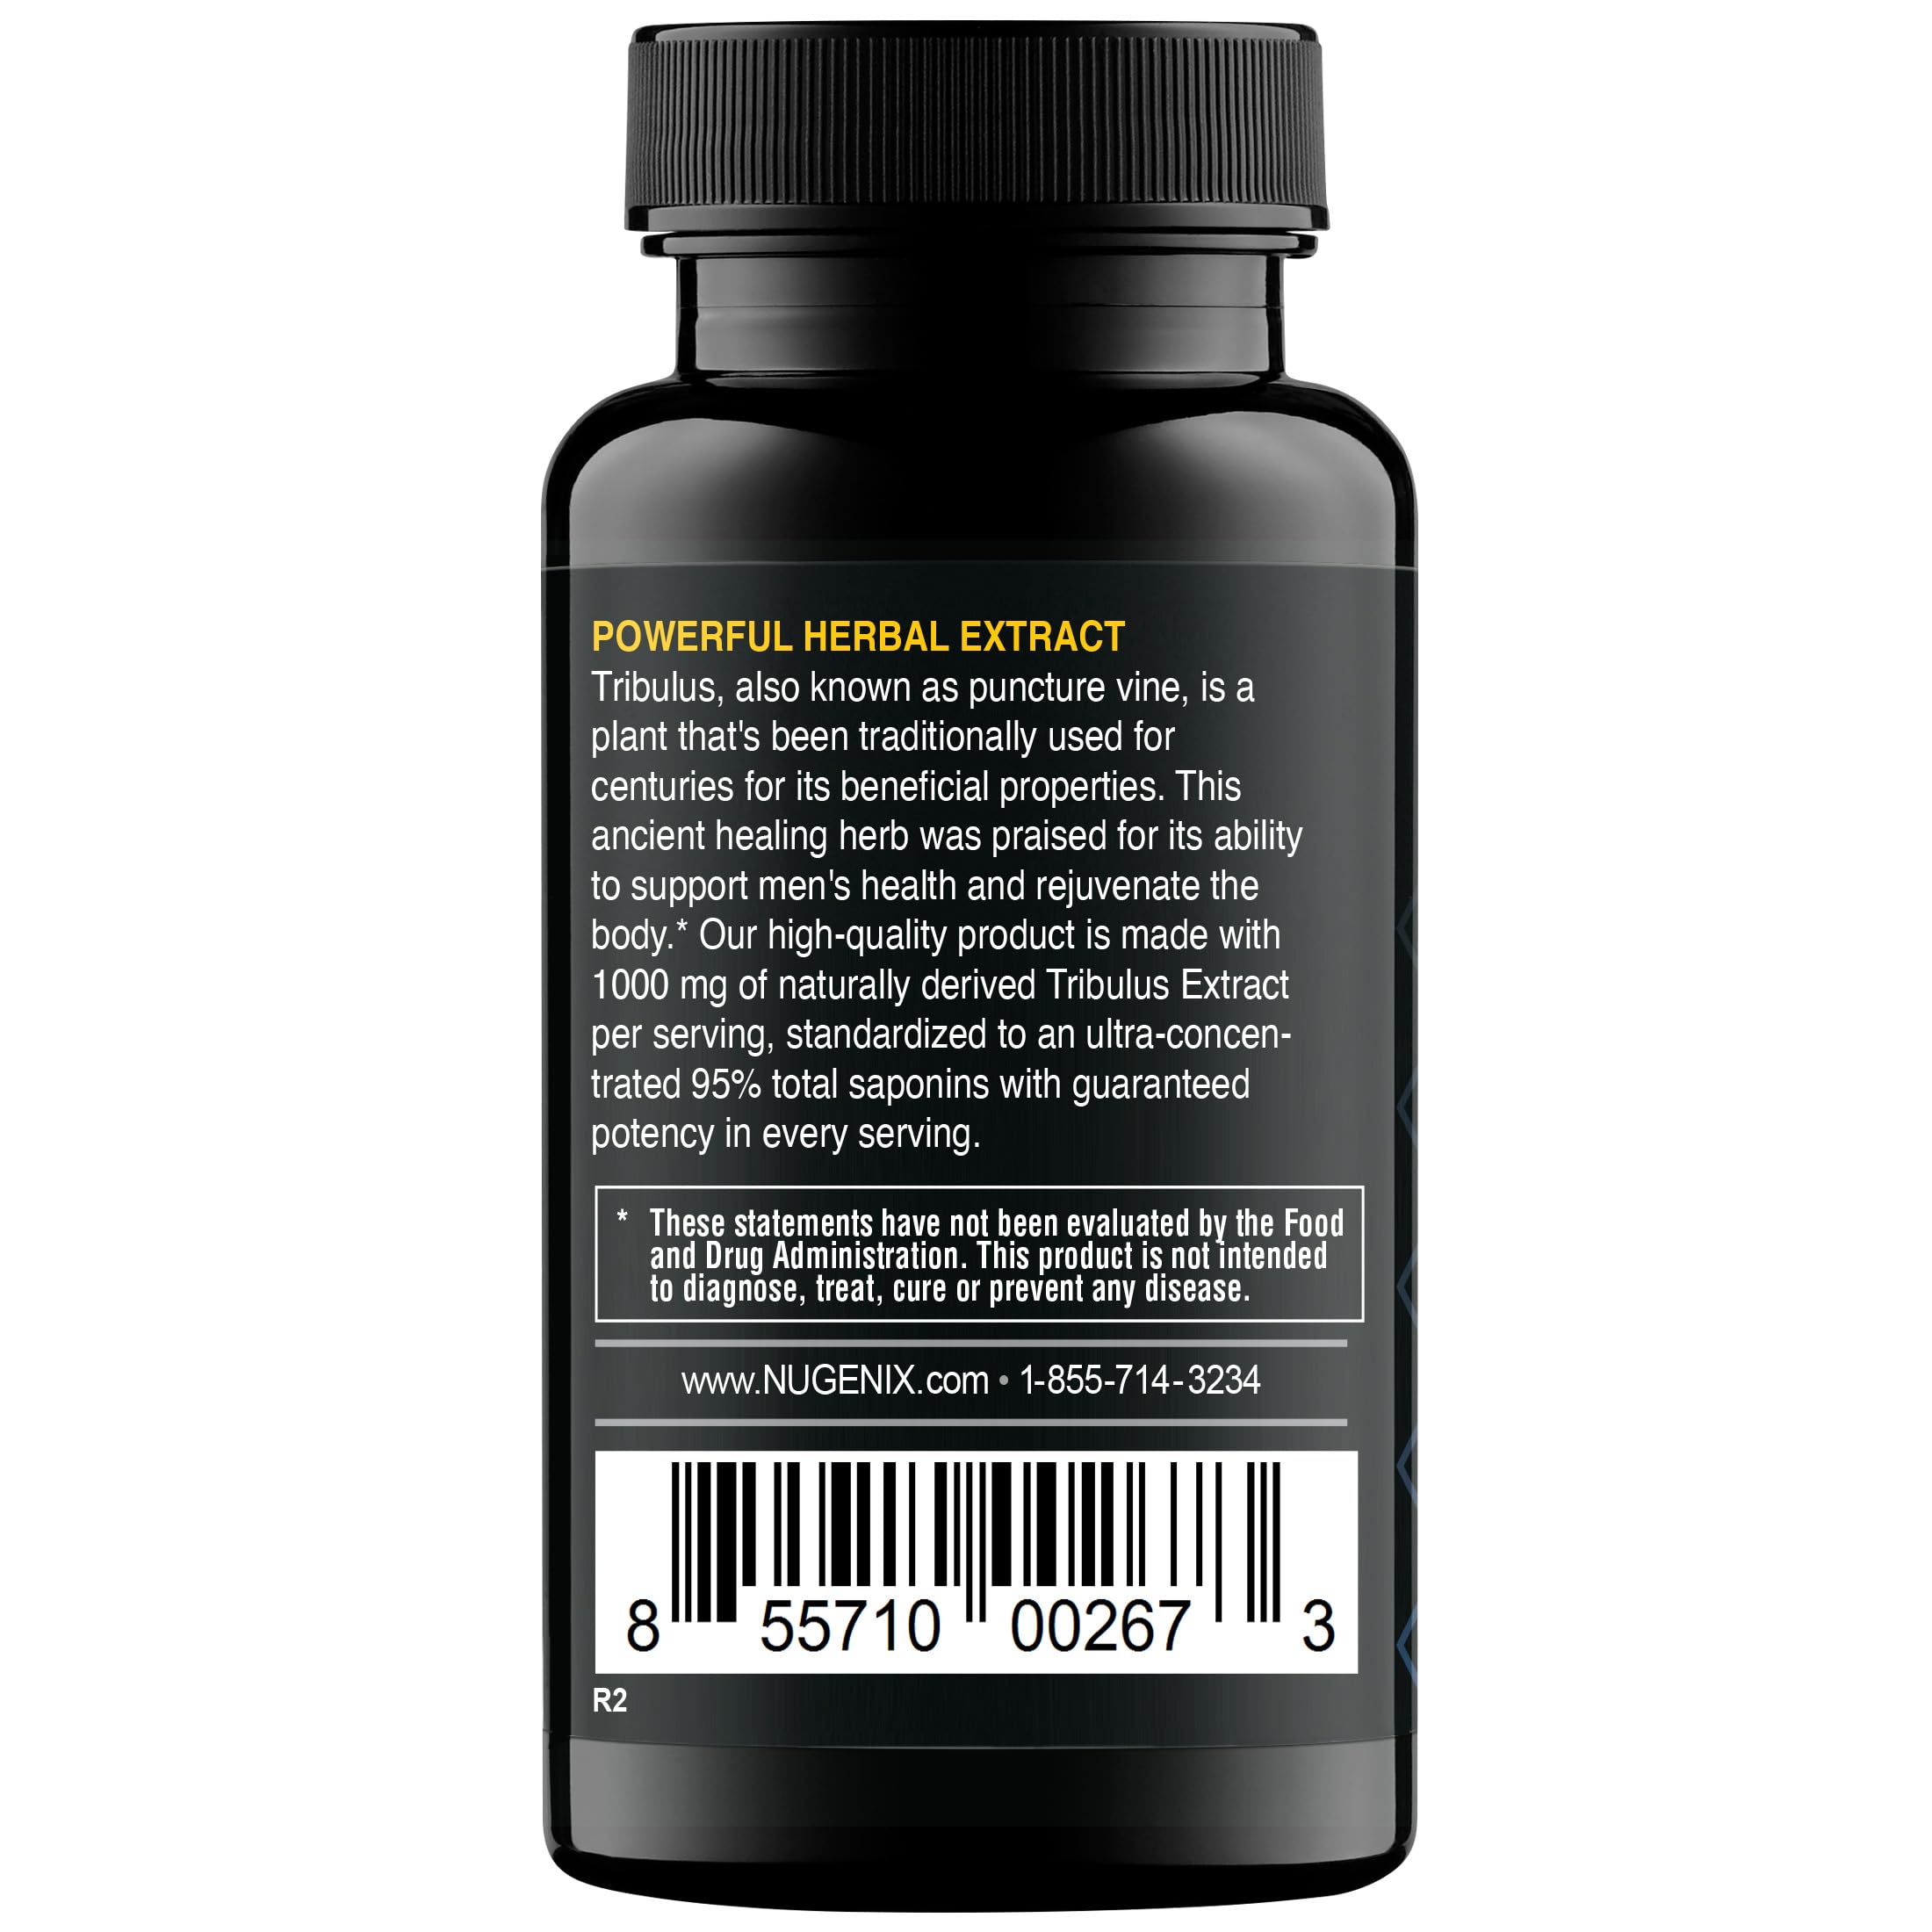 Nugenix Essentials Tribulus Terrestris Essentials Horny Goat Weed Supplements